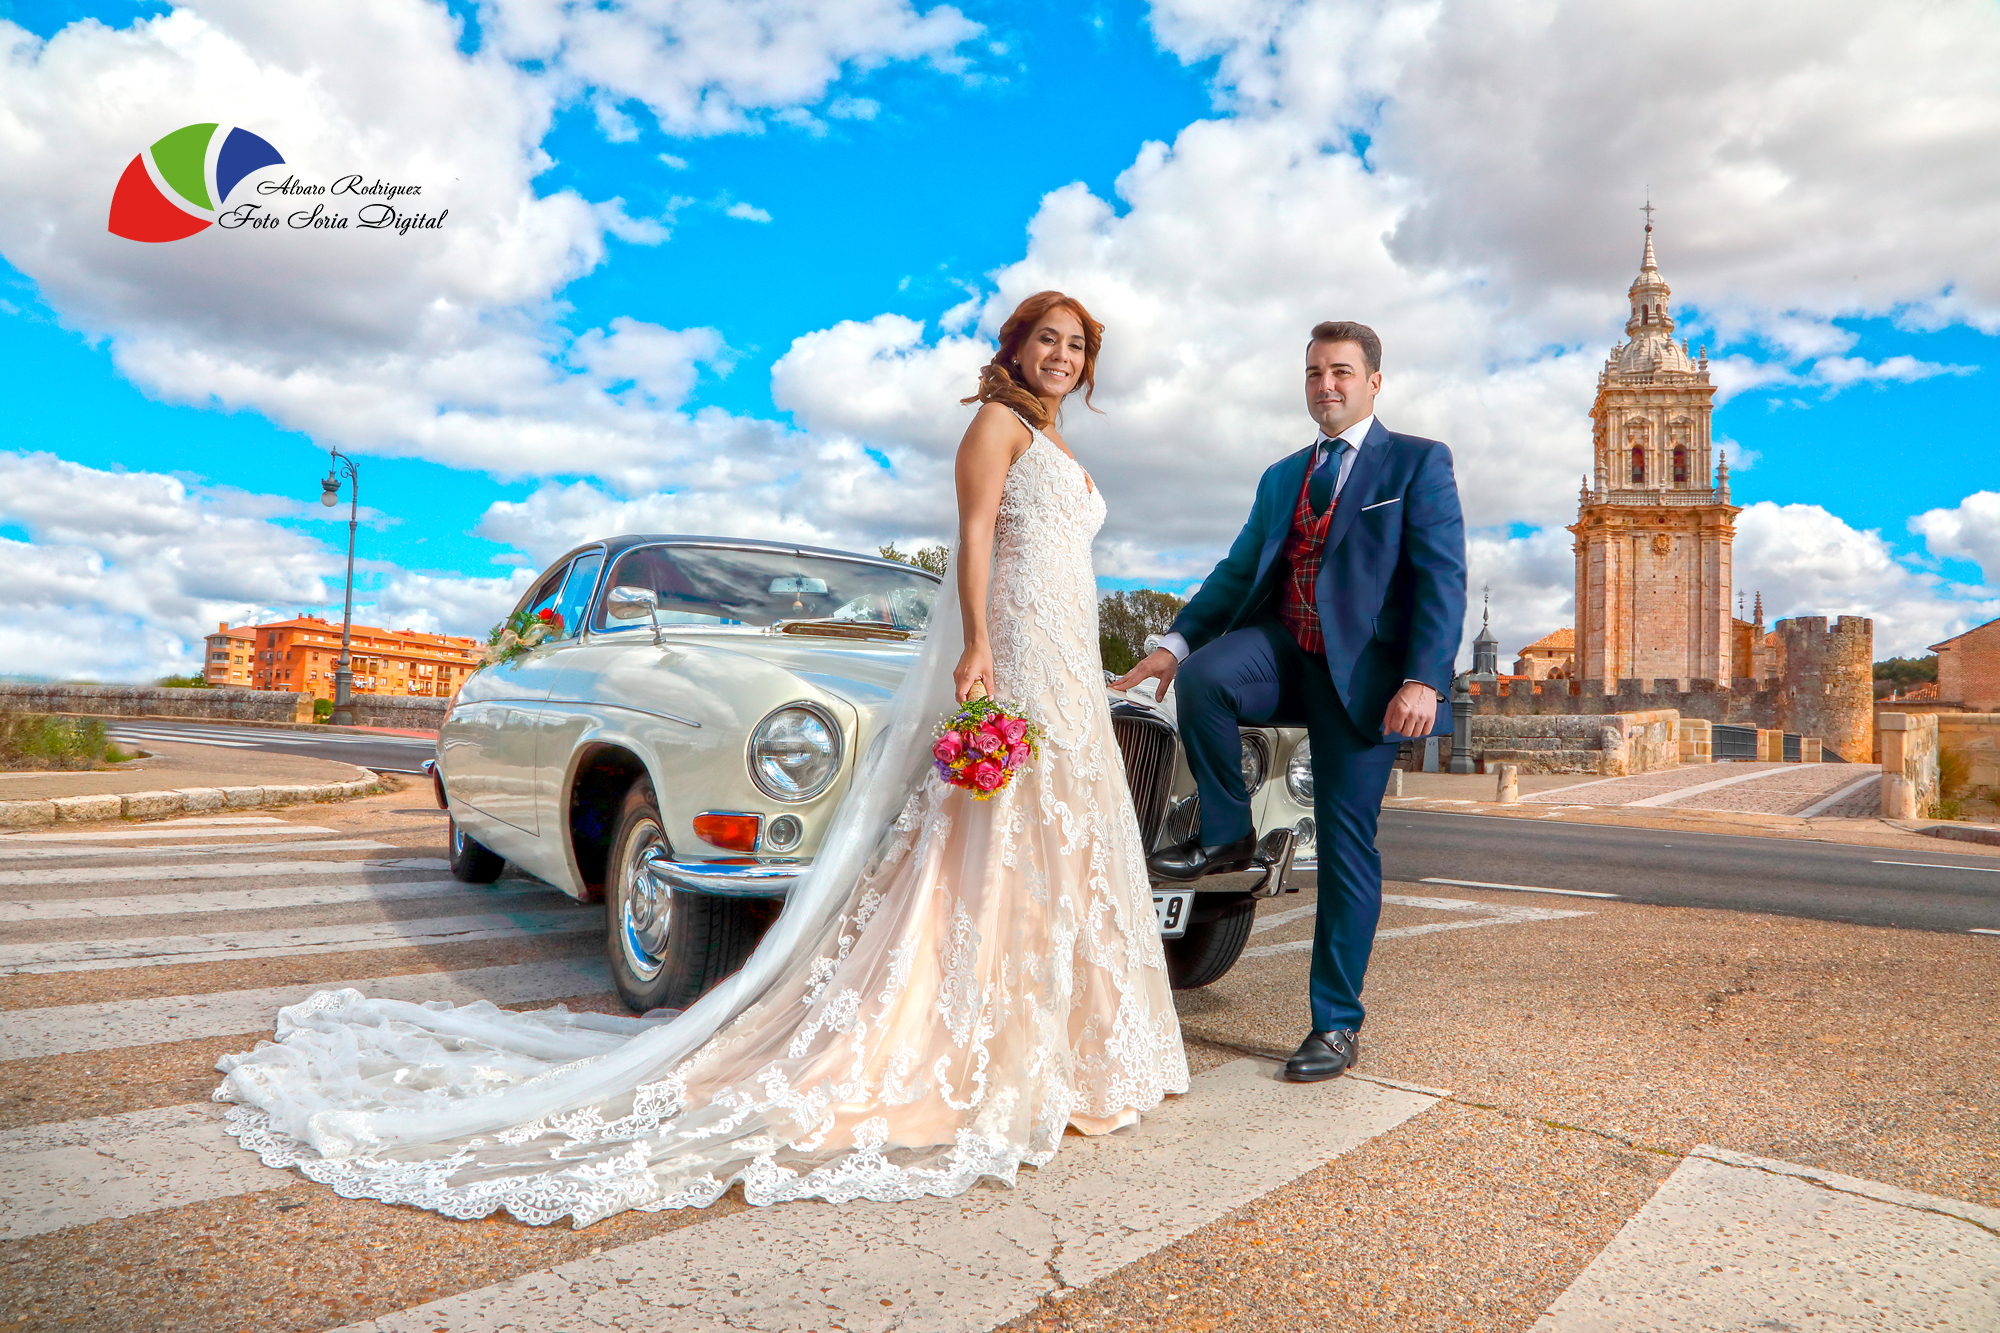 Fotos de boda en El Burgo de Osma, fotógrafo de bodas en El Burgo de Osma